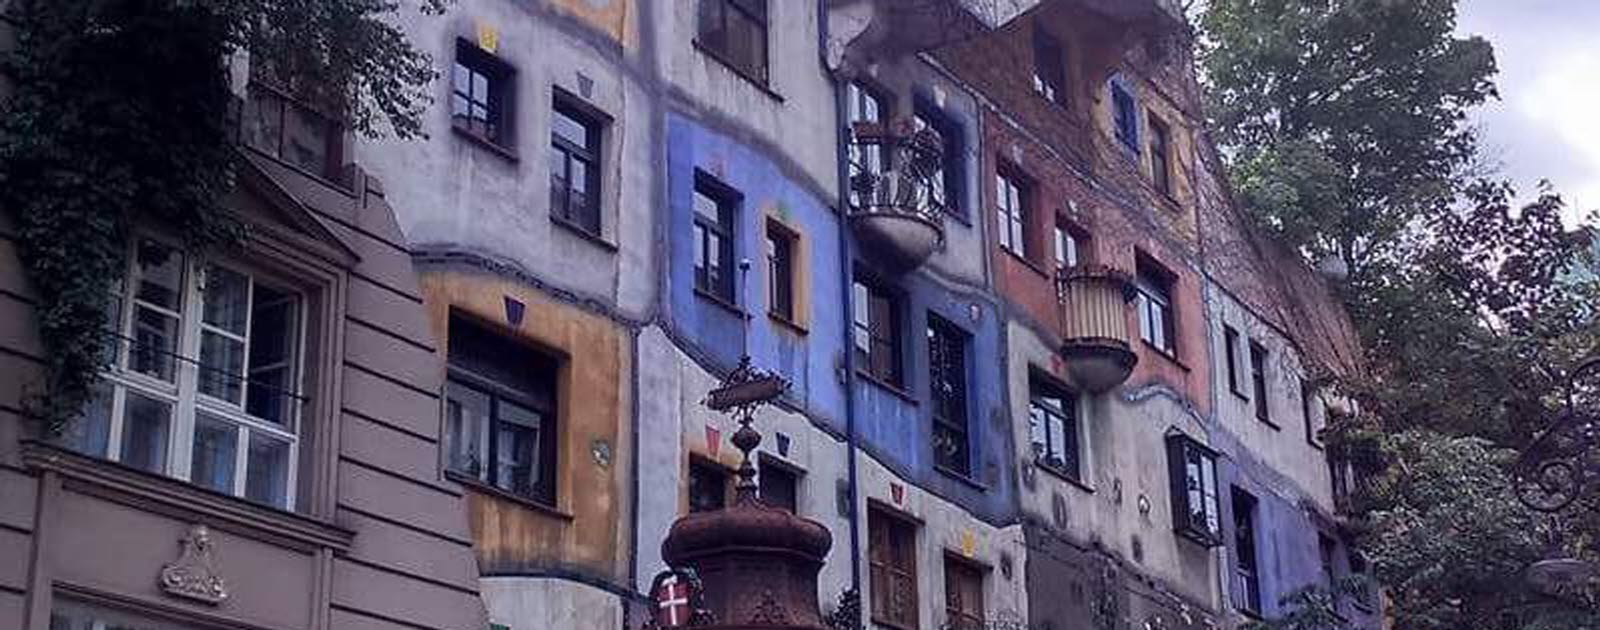 Färgglada Hundertwassers haus, skapat av Friedrich Hundertwasser